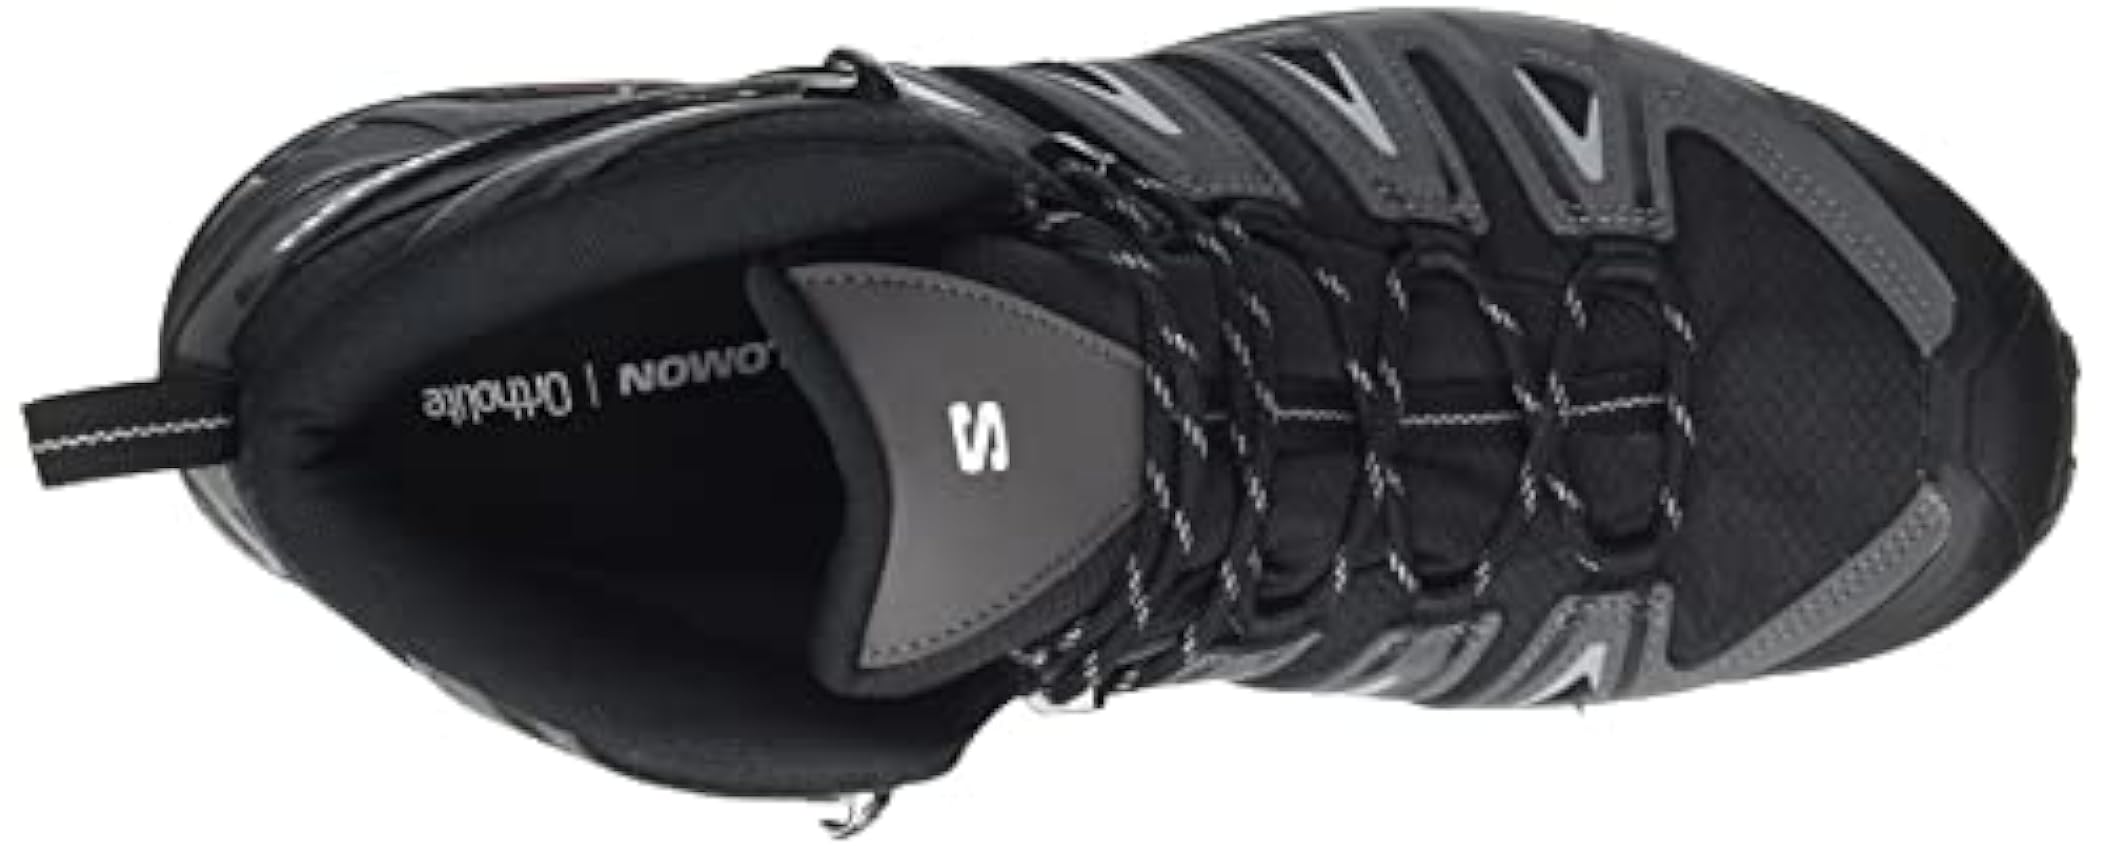 SALOMON X Ultra Pioneer Mid Gore-Tex Chaussures d´extérieur pour Homme, Imperméable, Maintien sûr, Stabilité et amorti tMdyvTyQ